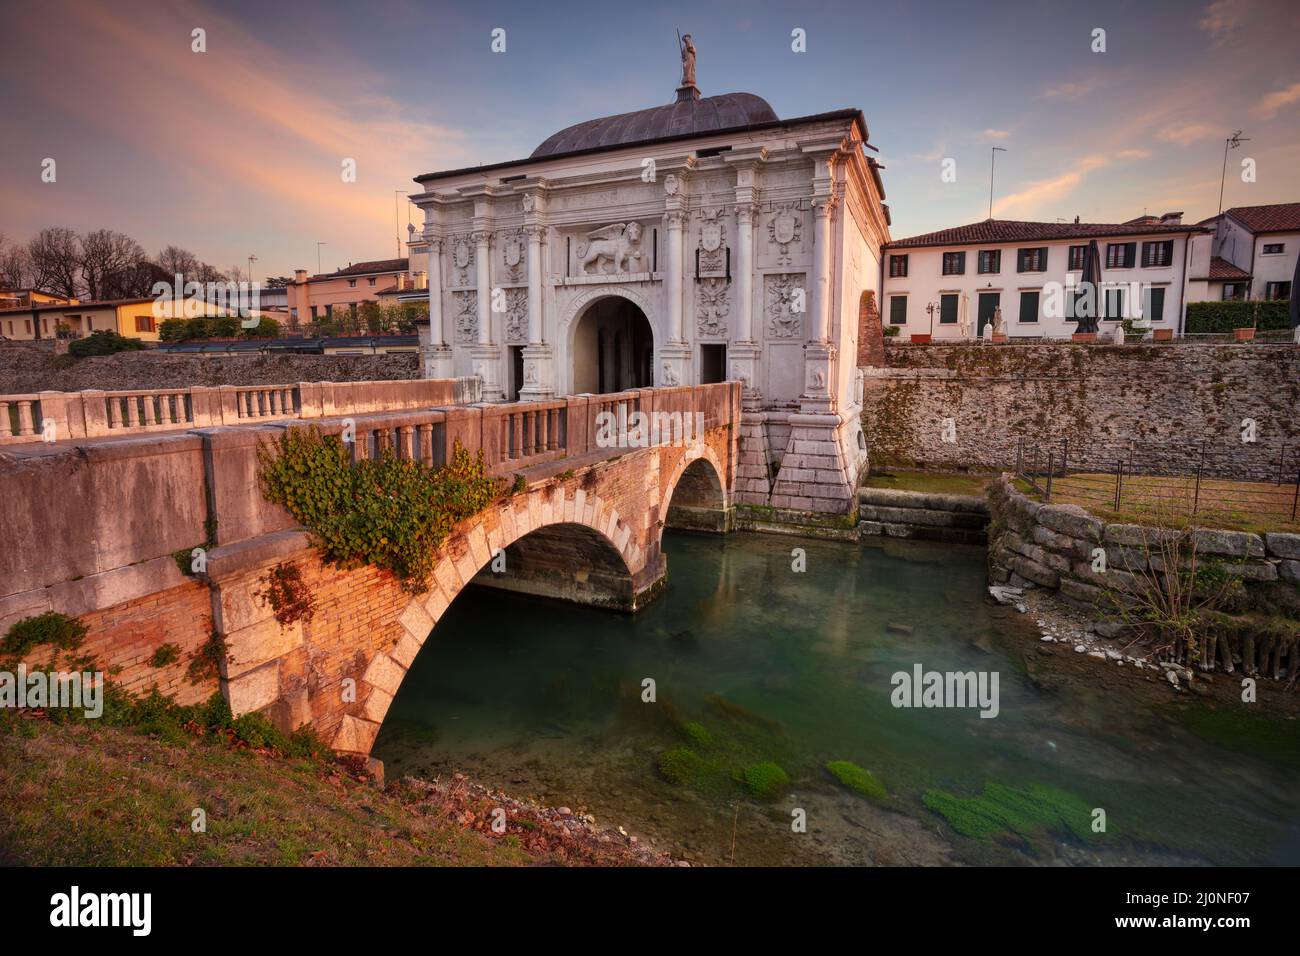 Treviso, Italia. Immagine del paesaggio urbano di Treviso, Italia con porta alla città vecchia al tramonto. Foto Stock